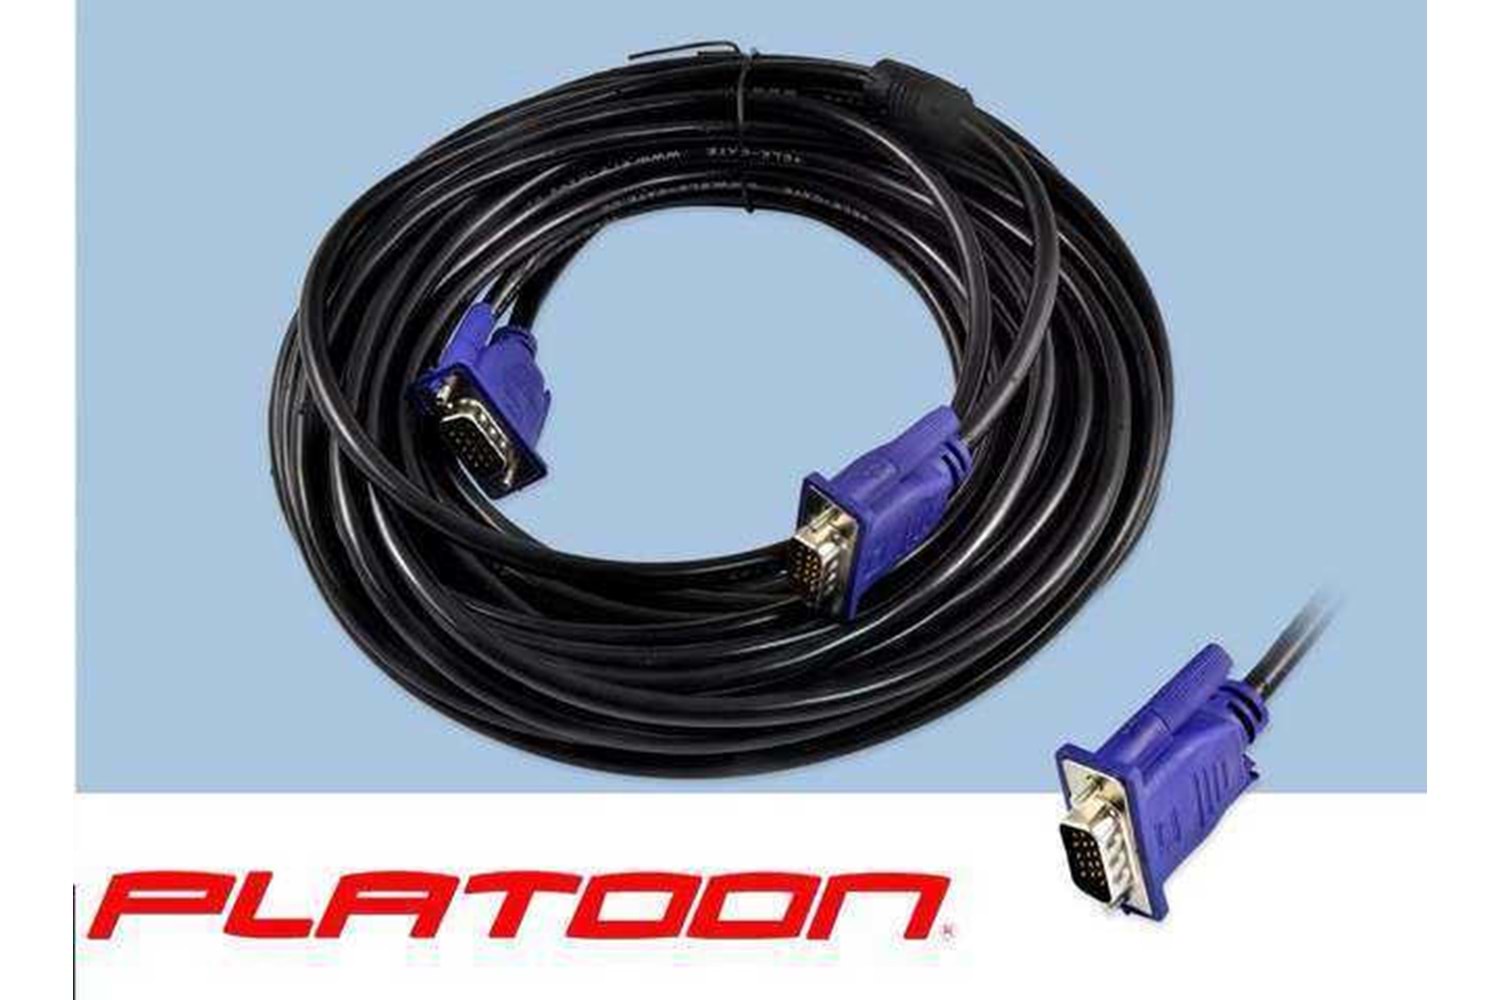 PLATOON PL-7015 VGA 15M POŞETLİ KABLO